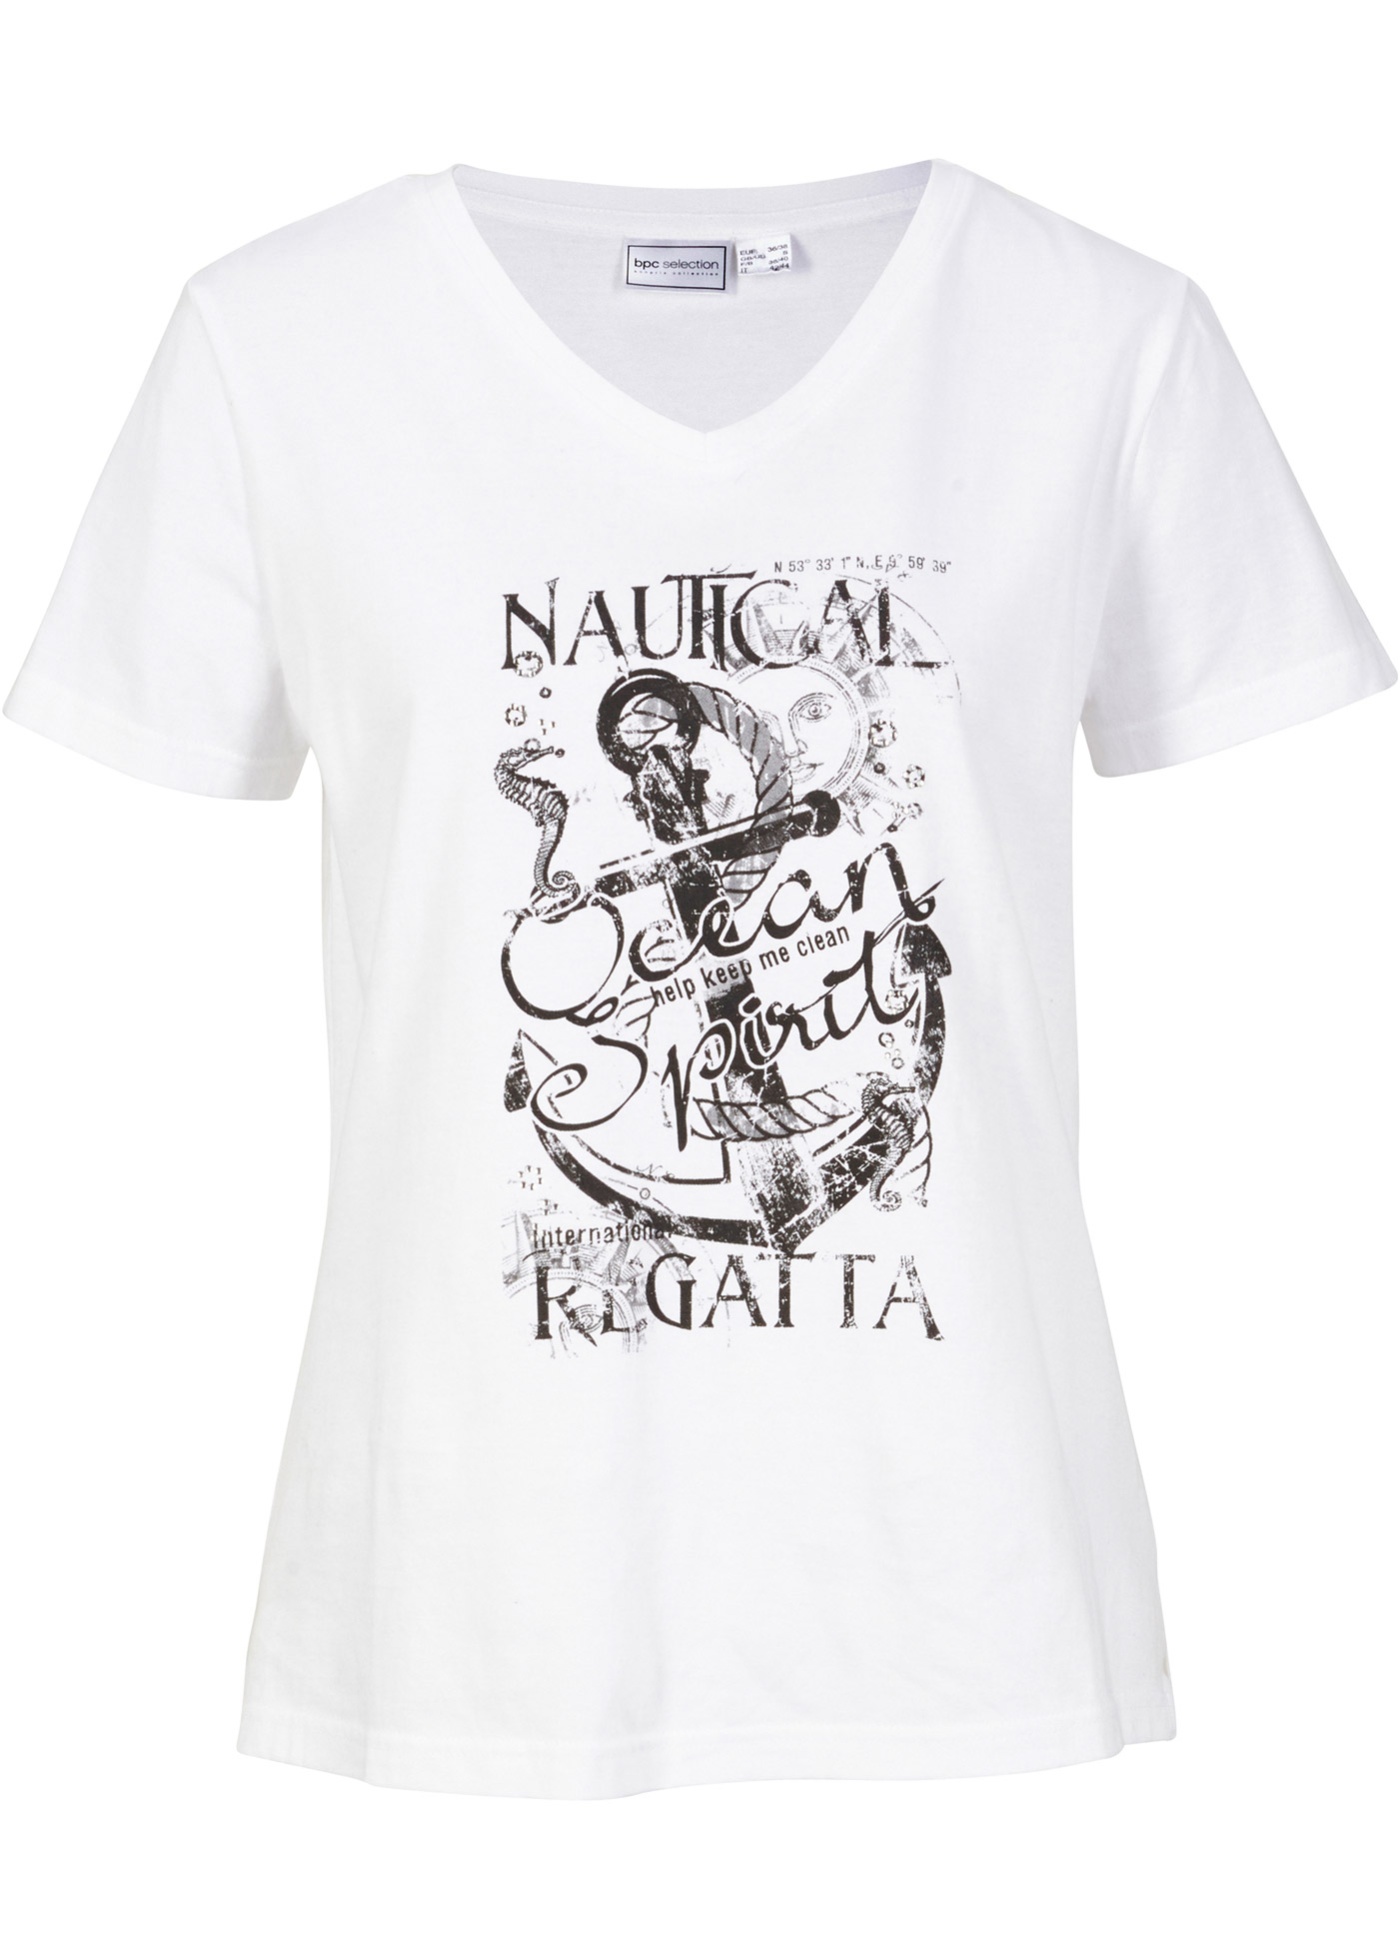 Klassisches T-Shirt mit Aufdruck und kleinen Gltzersteinchen (94736881) in weiß / schwarz